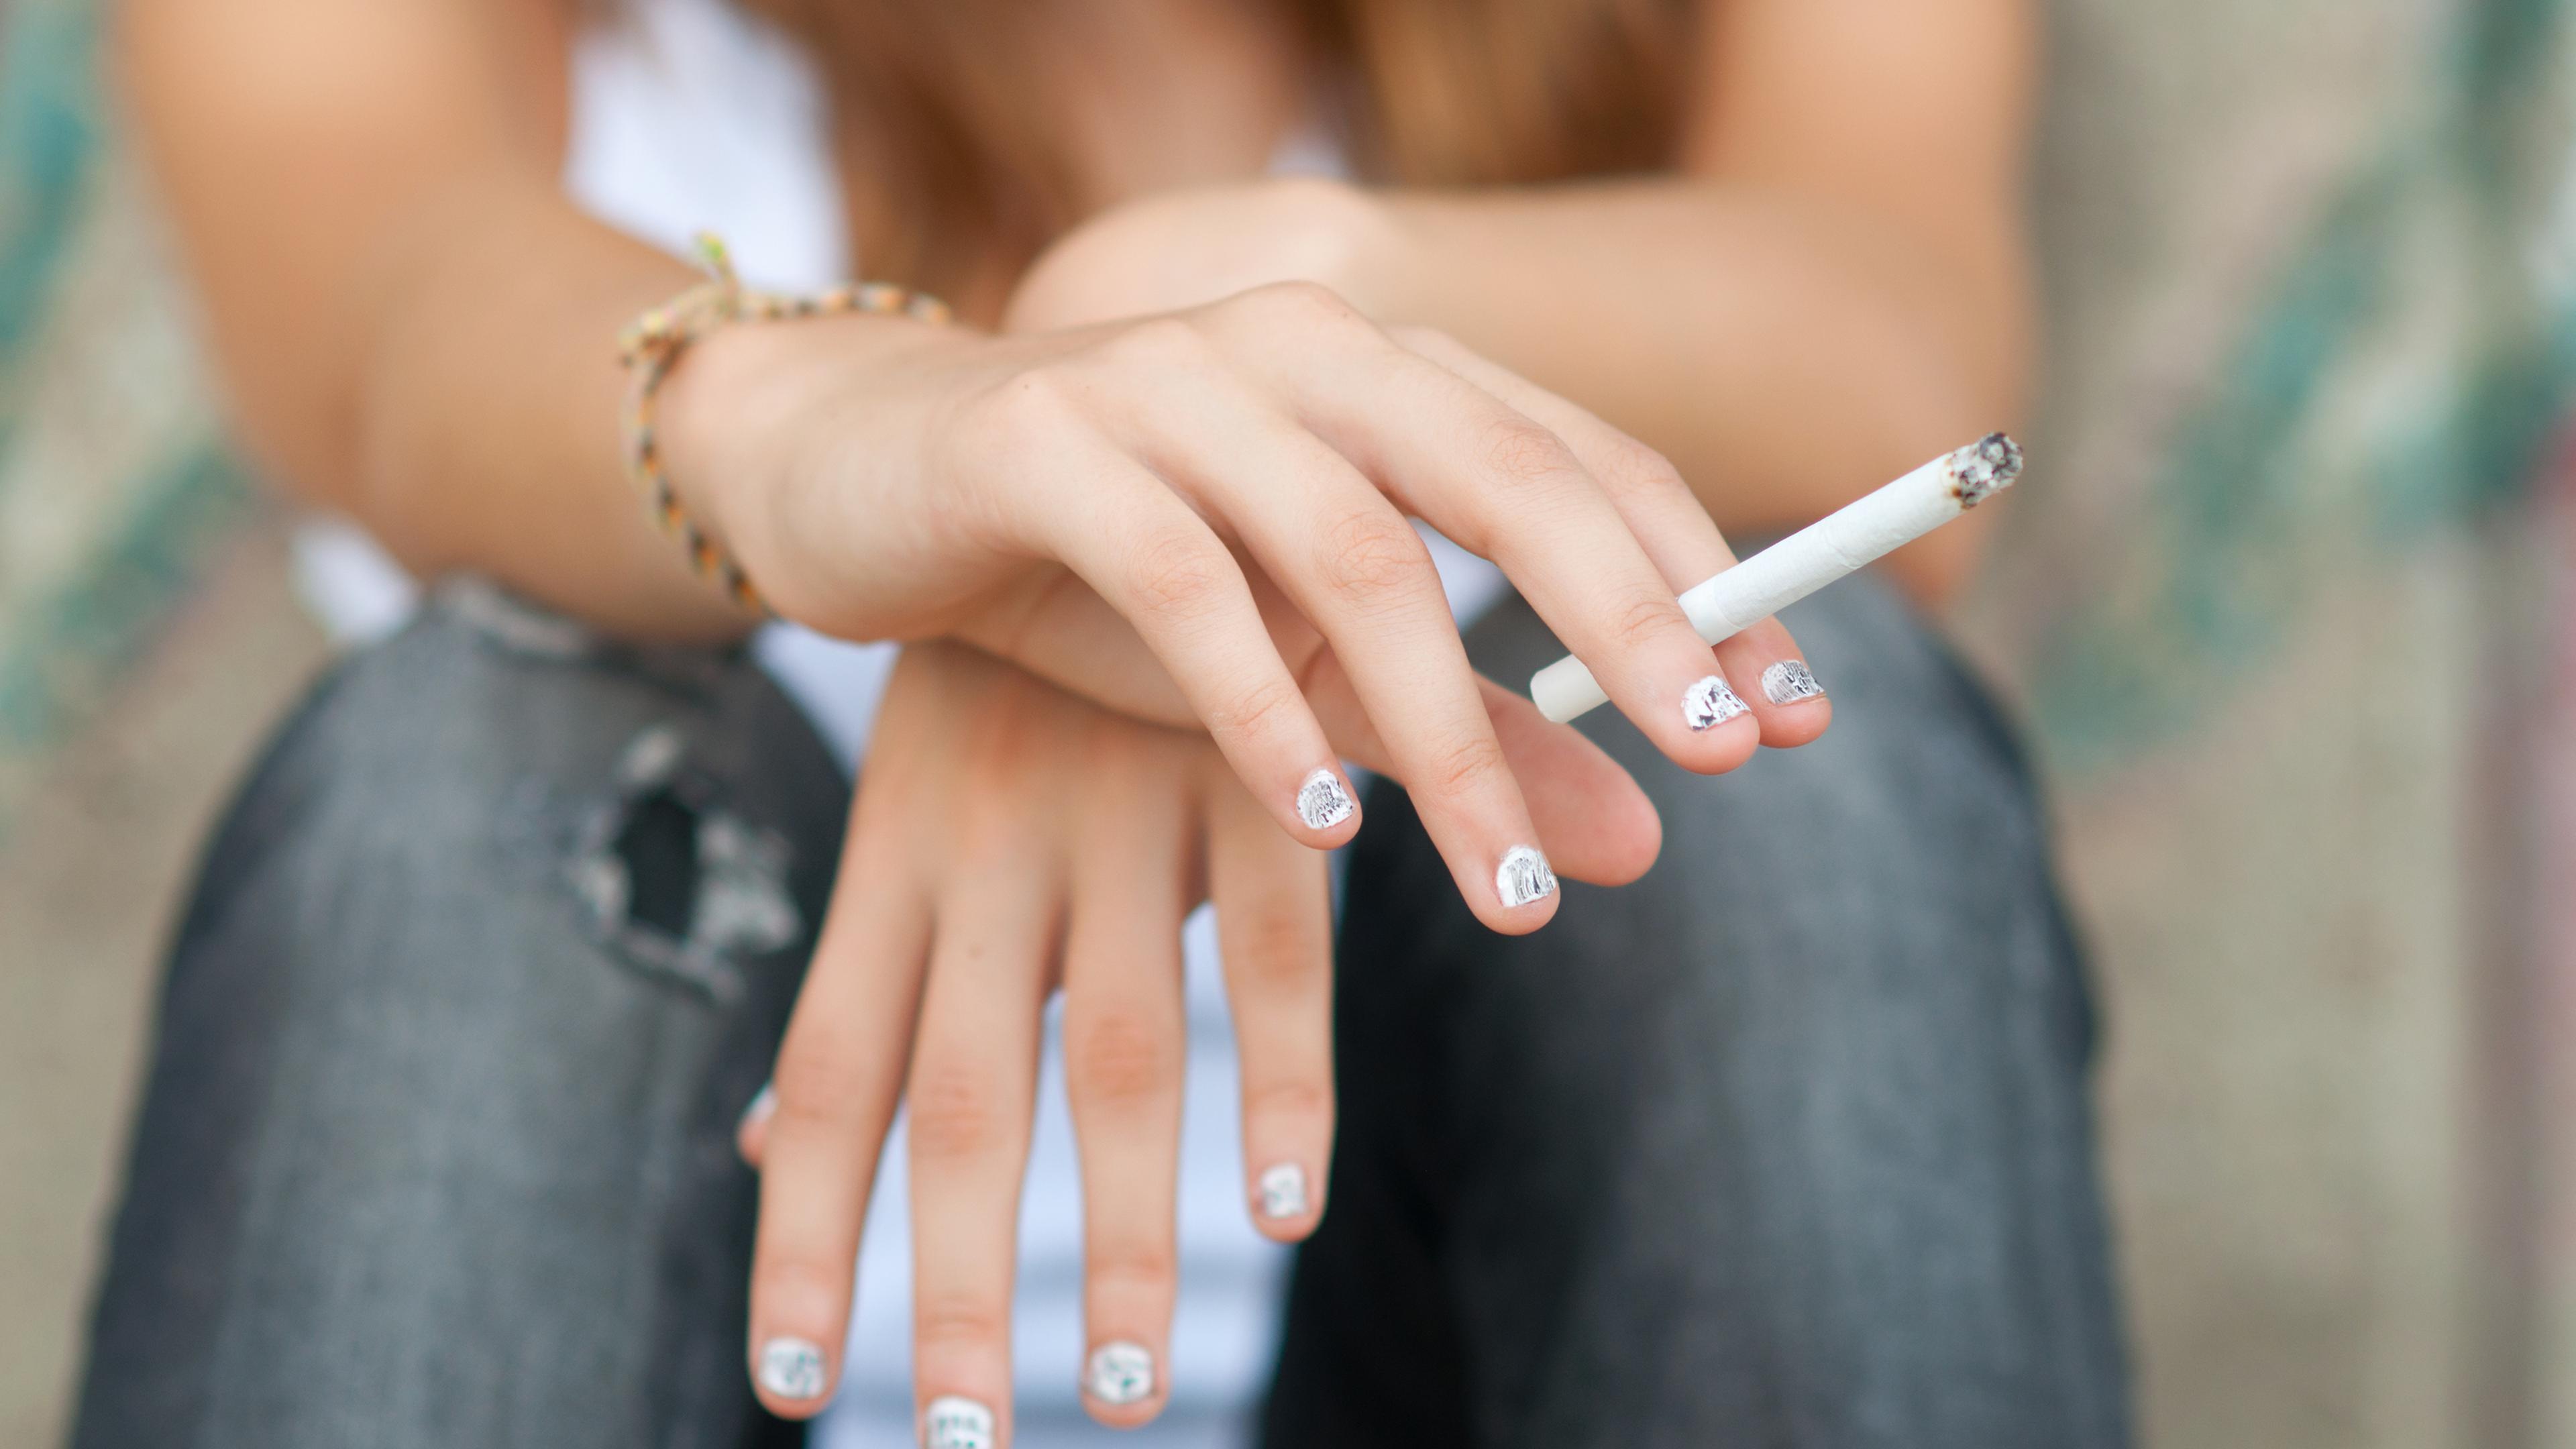 Frankreich geht erneut gegen echte Zigaretten aus Luxemburg vor